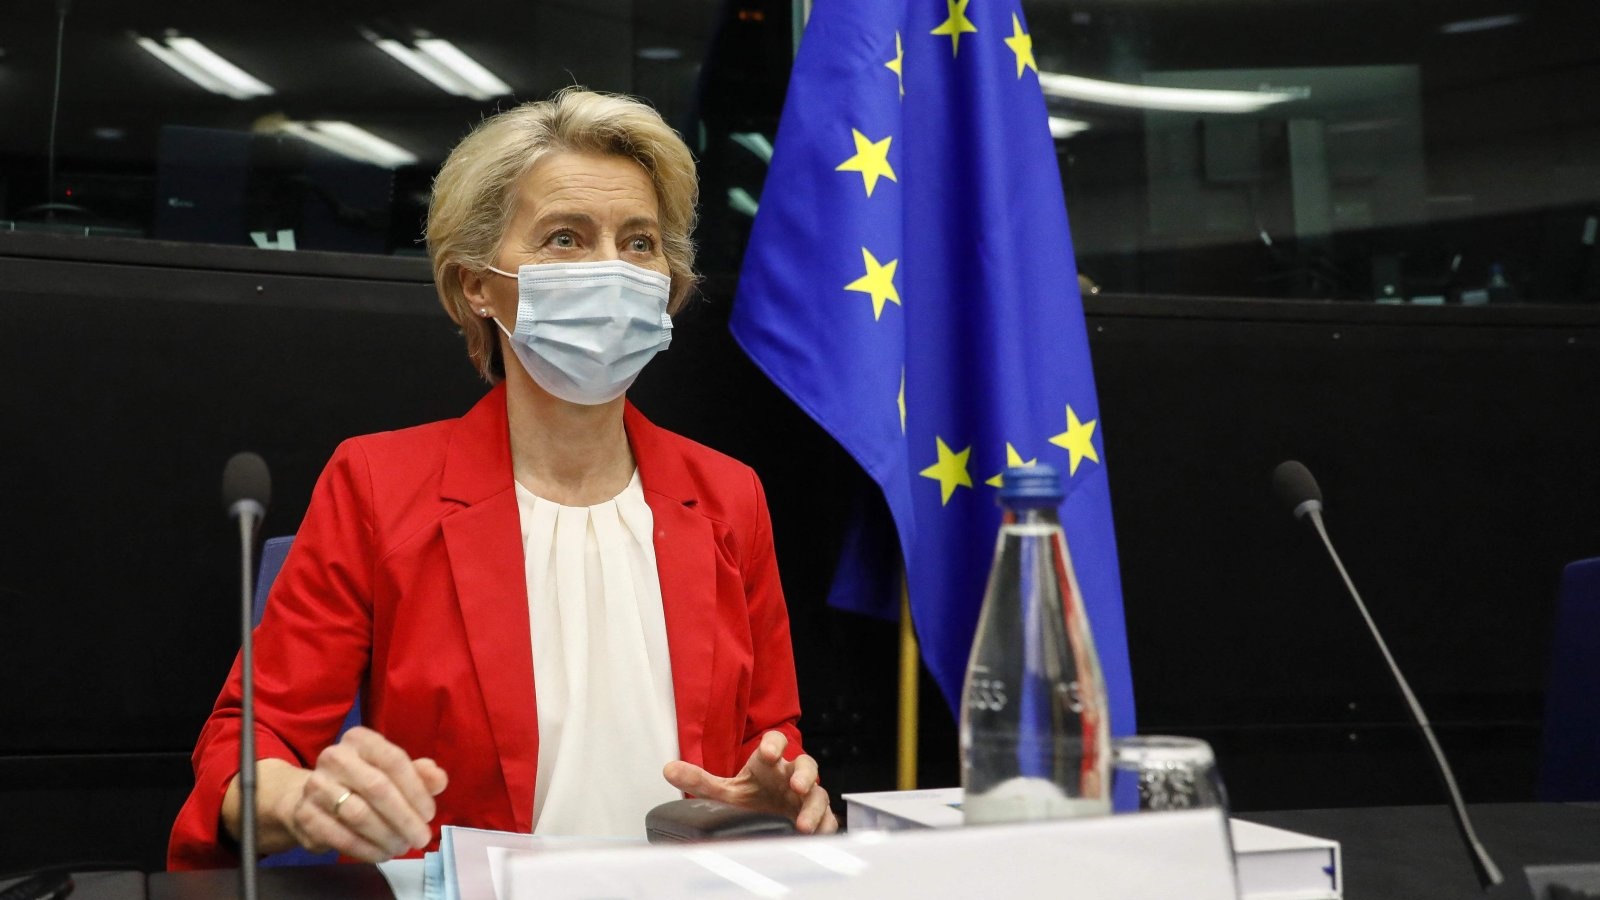 رئيسة المفوضية الأوروبية أورسولا فون دير لايين، مرتدية قناعًا، قبيل اجتماع هيئة المفوضين في البرلمان الأوروبي في ستراسبورغ، فرنسا. بتاريخ 14 أيلول/سبتمبر 2021.